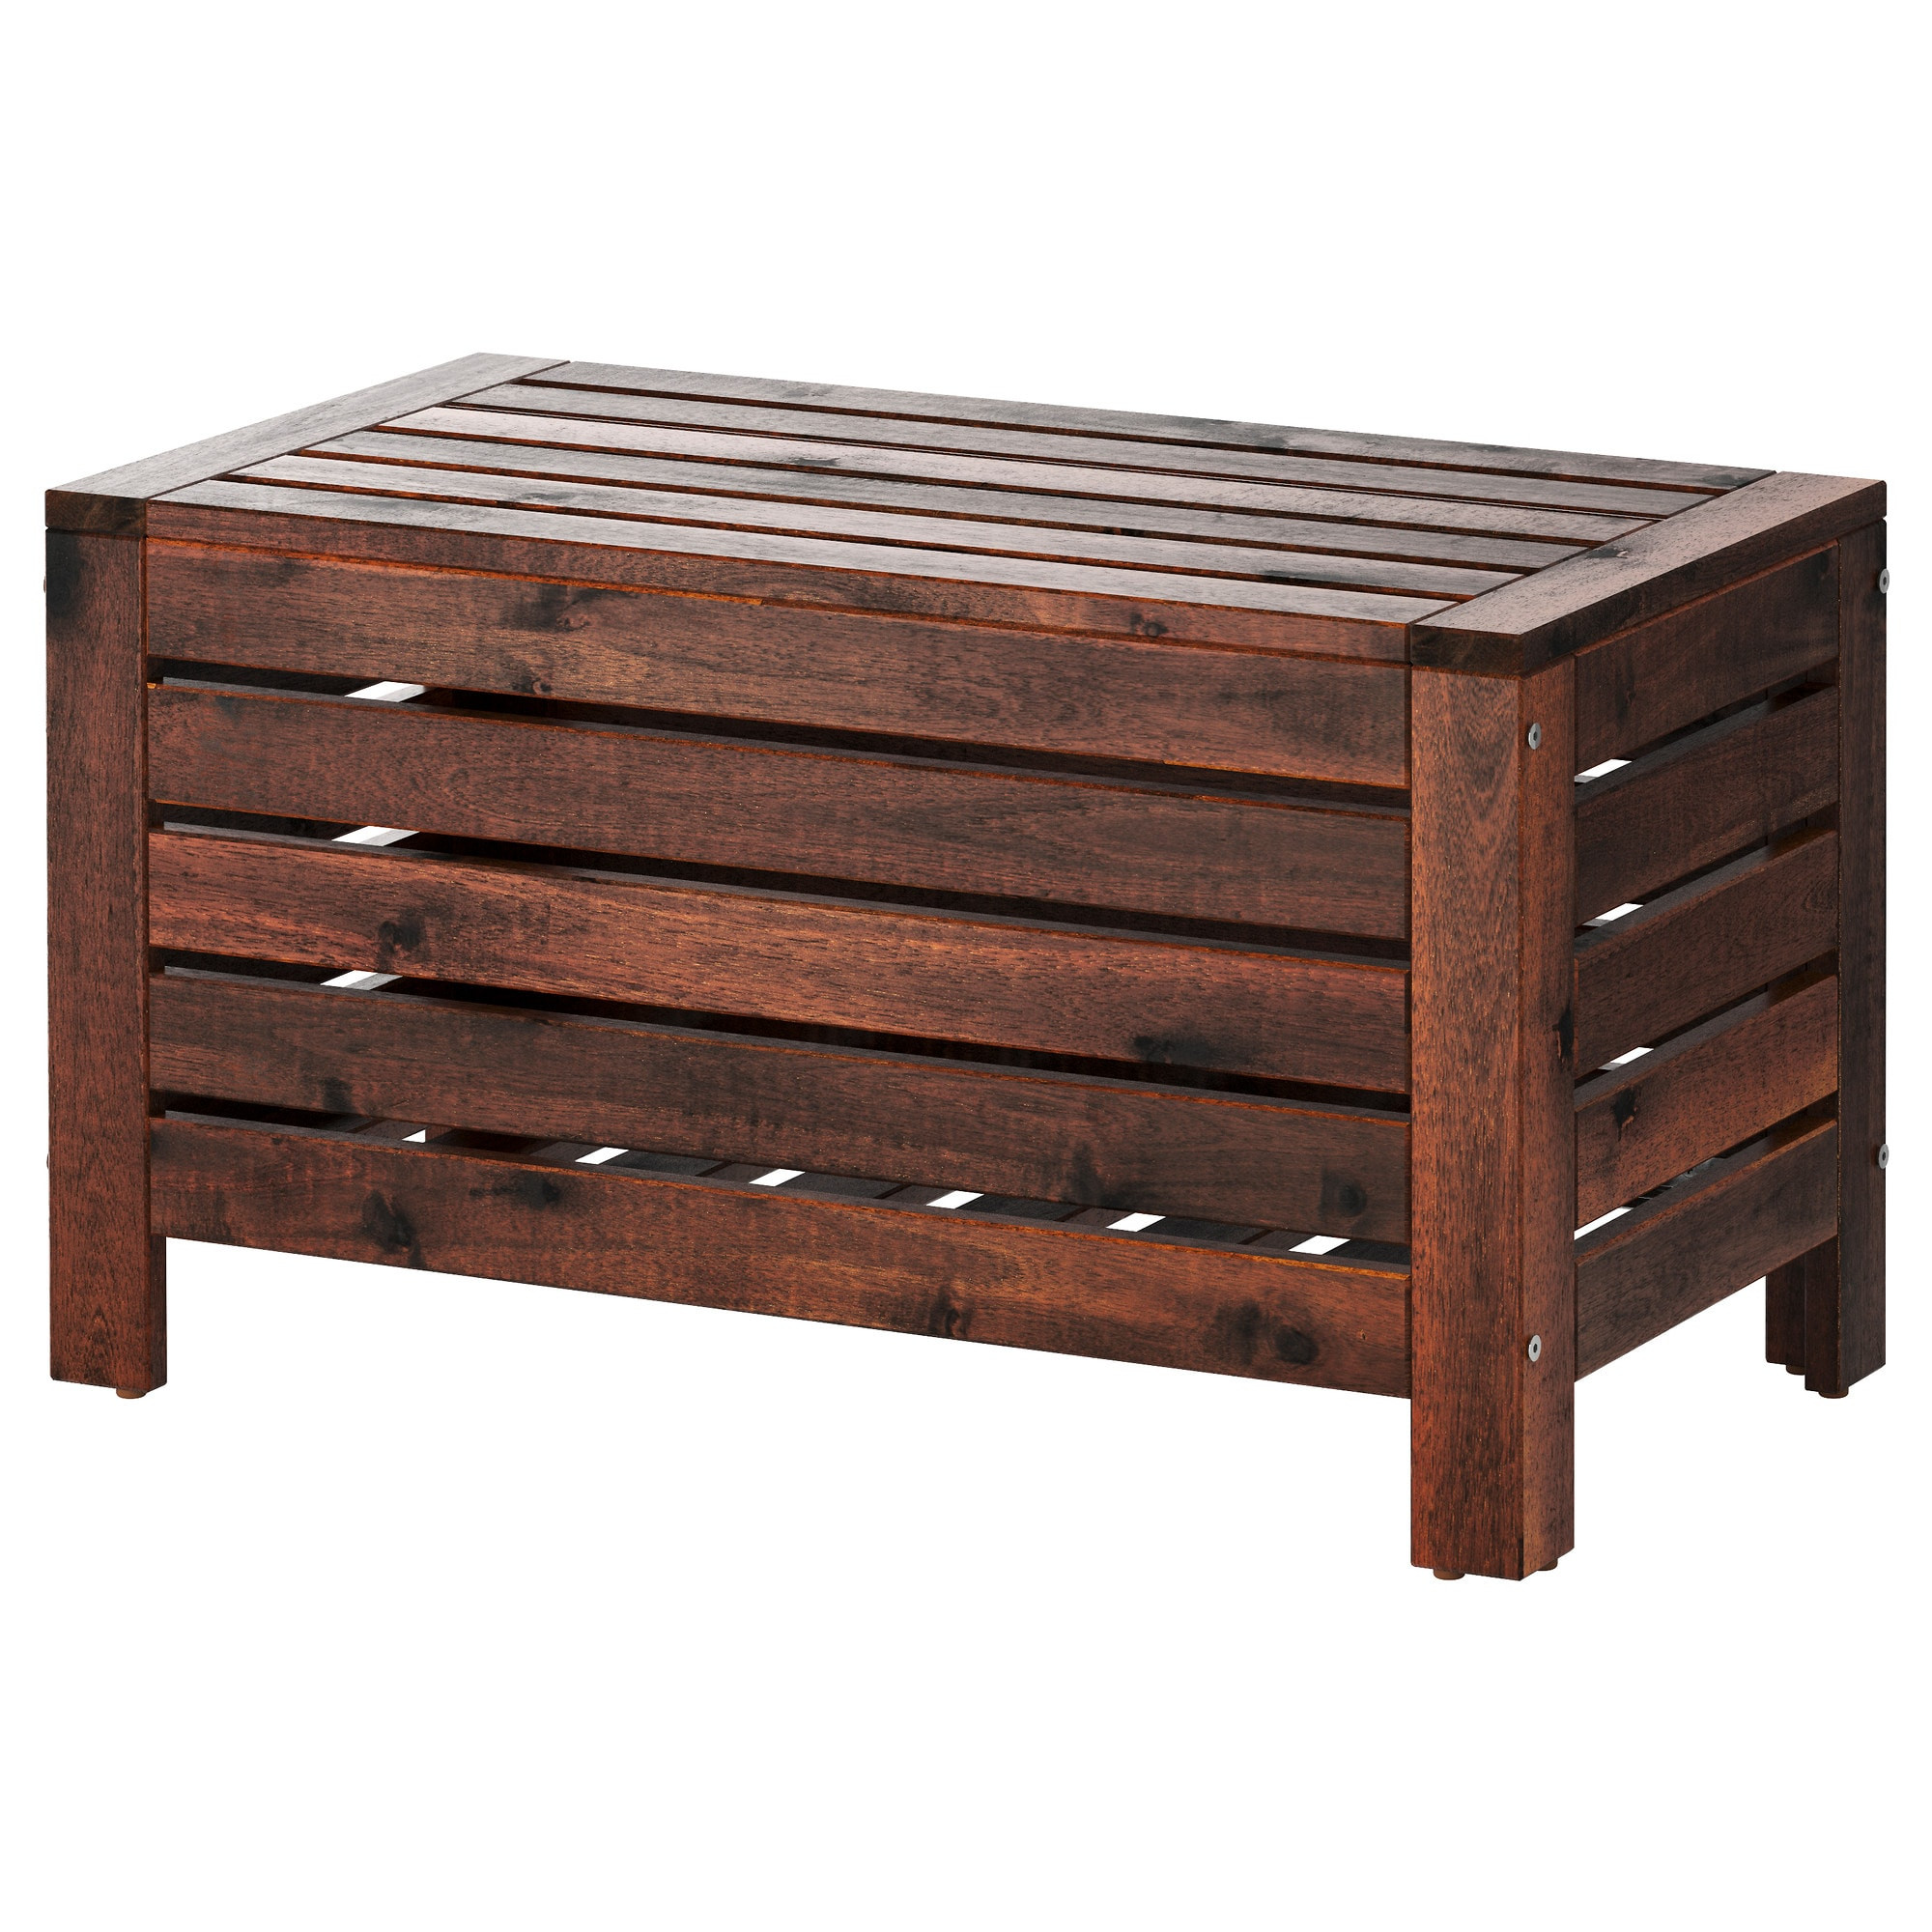 Best ideas about Outdoor Storage Bench
. Save or Pin Garden Storage & Plastic Garden Storage Now.